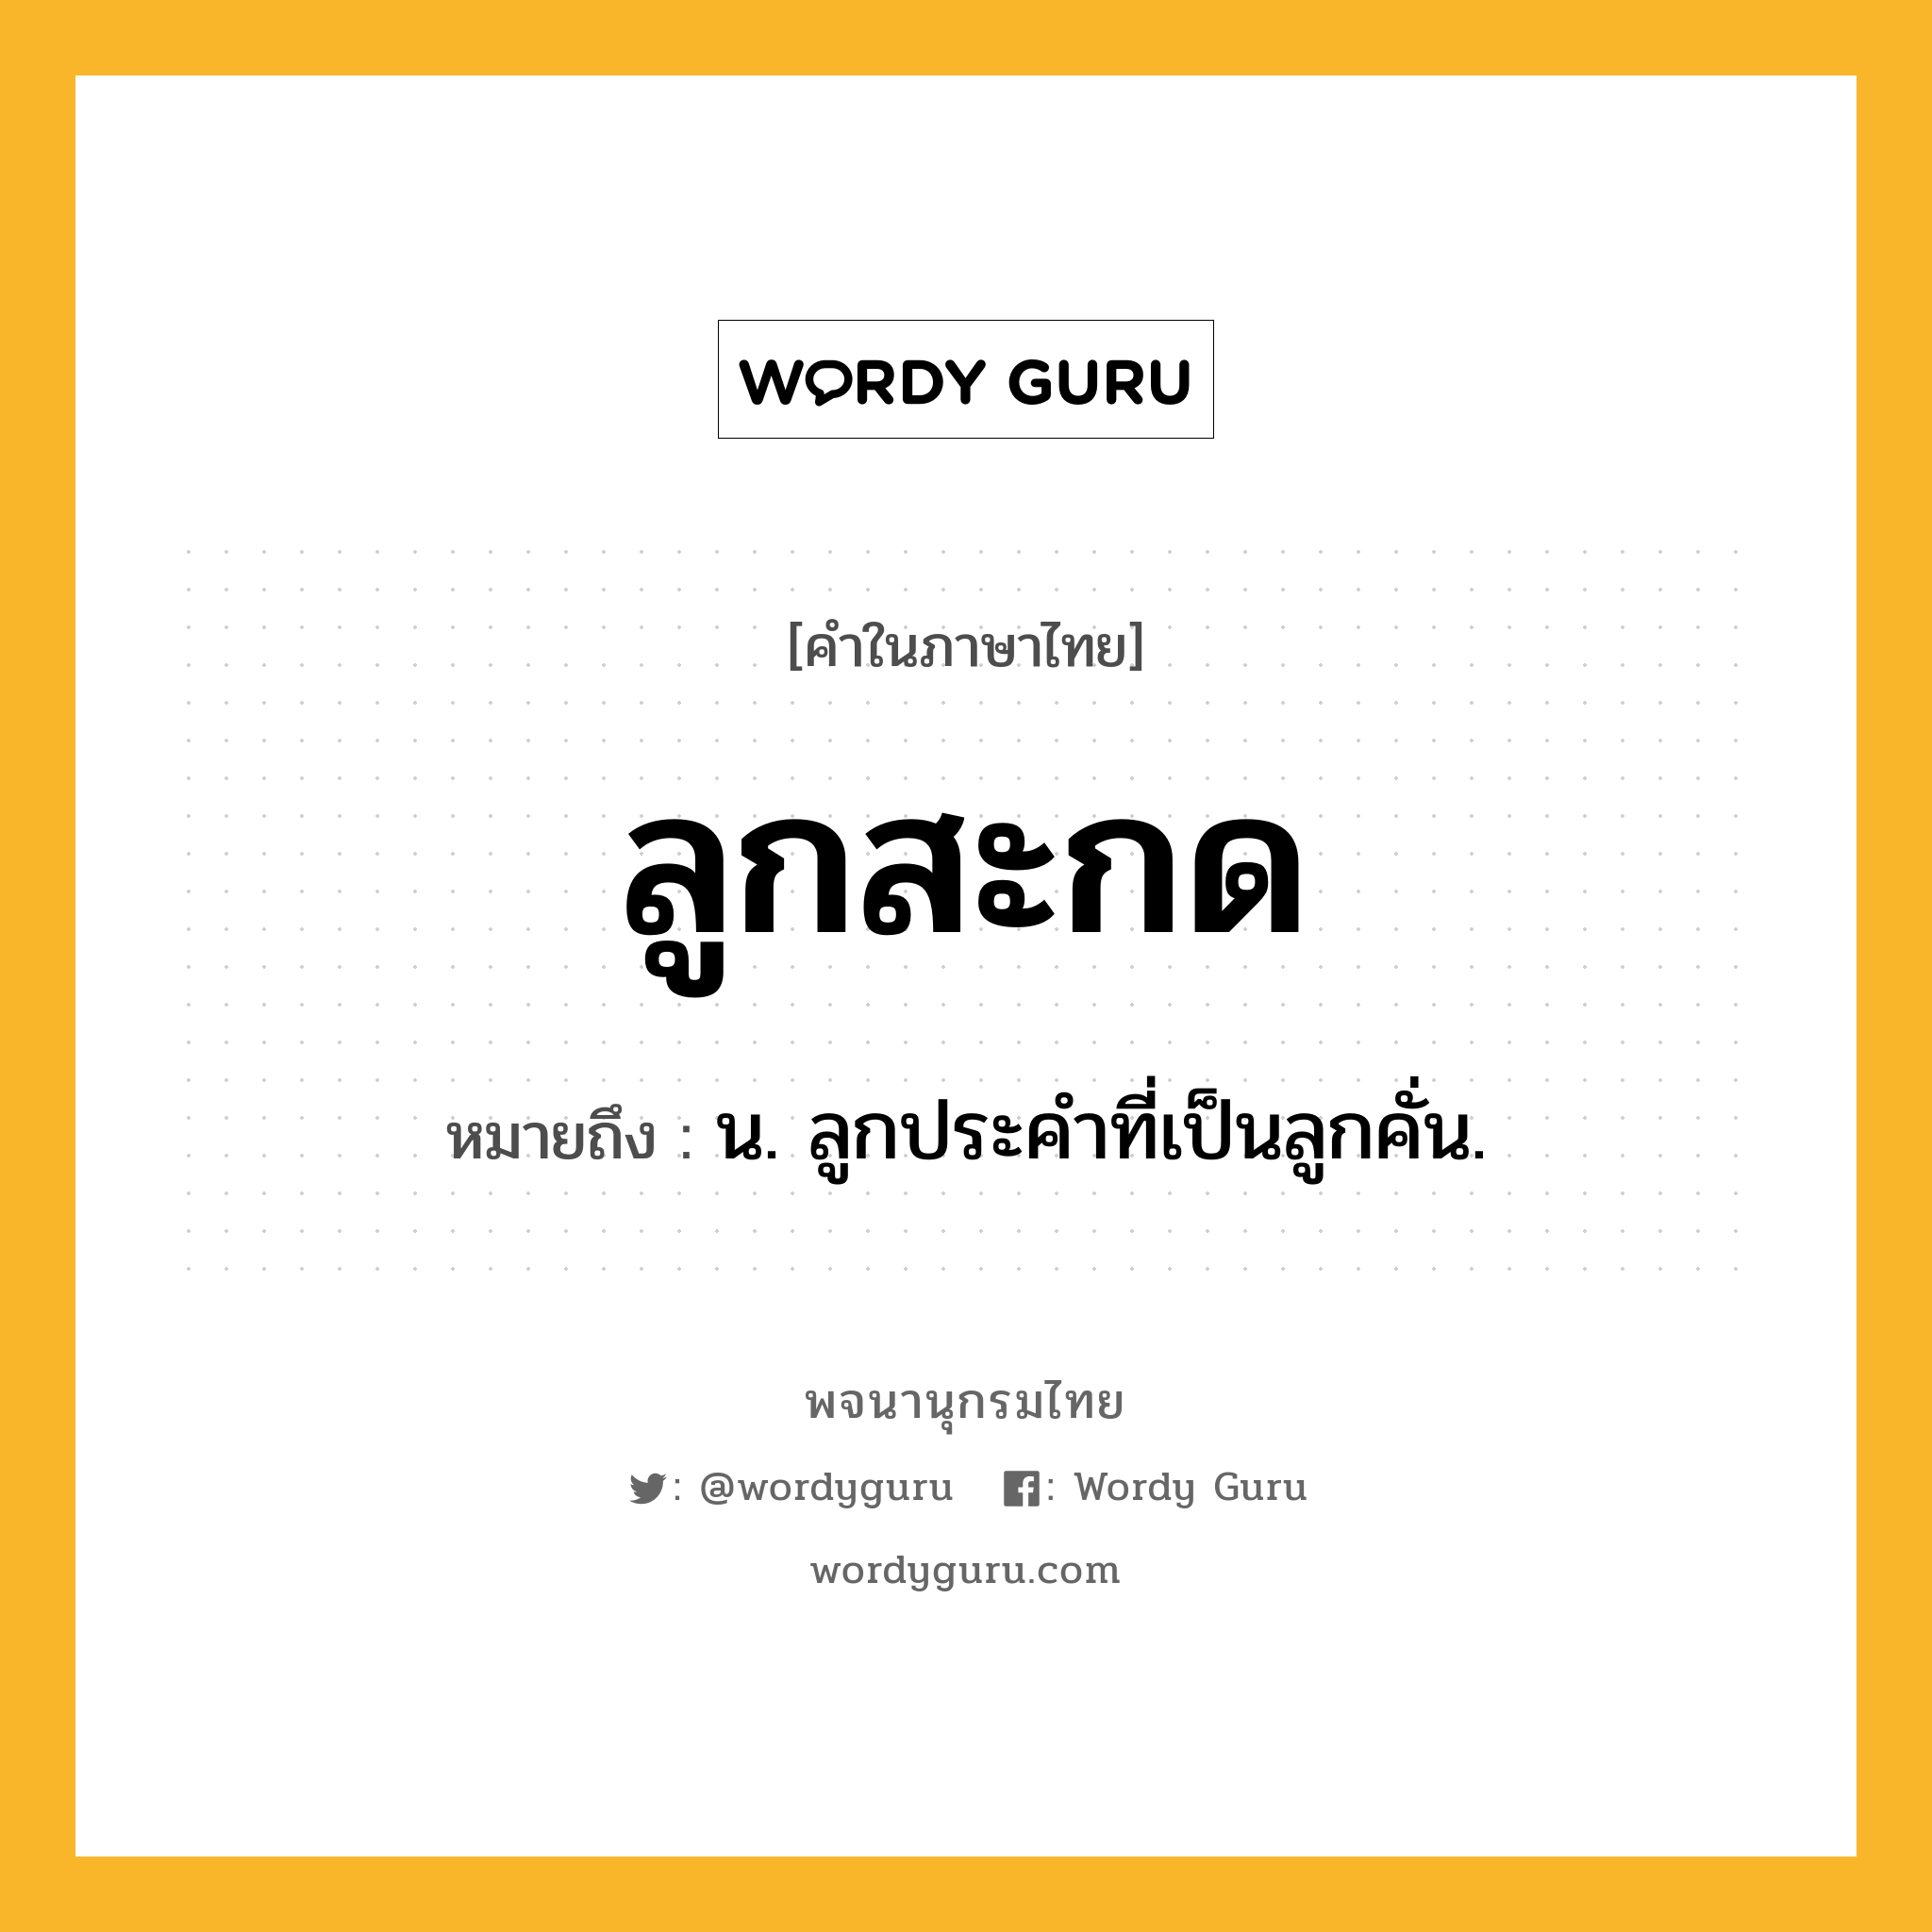 ลูกสะกด หมายถึงอะไร?, คำในภาษาไทย ลูกสะกด หมายถึง น. ลูกประคำที่เป็นลูกคั่น.